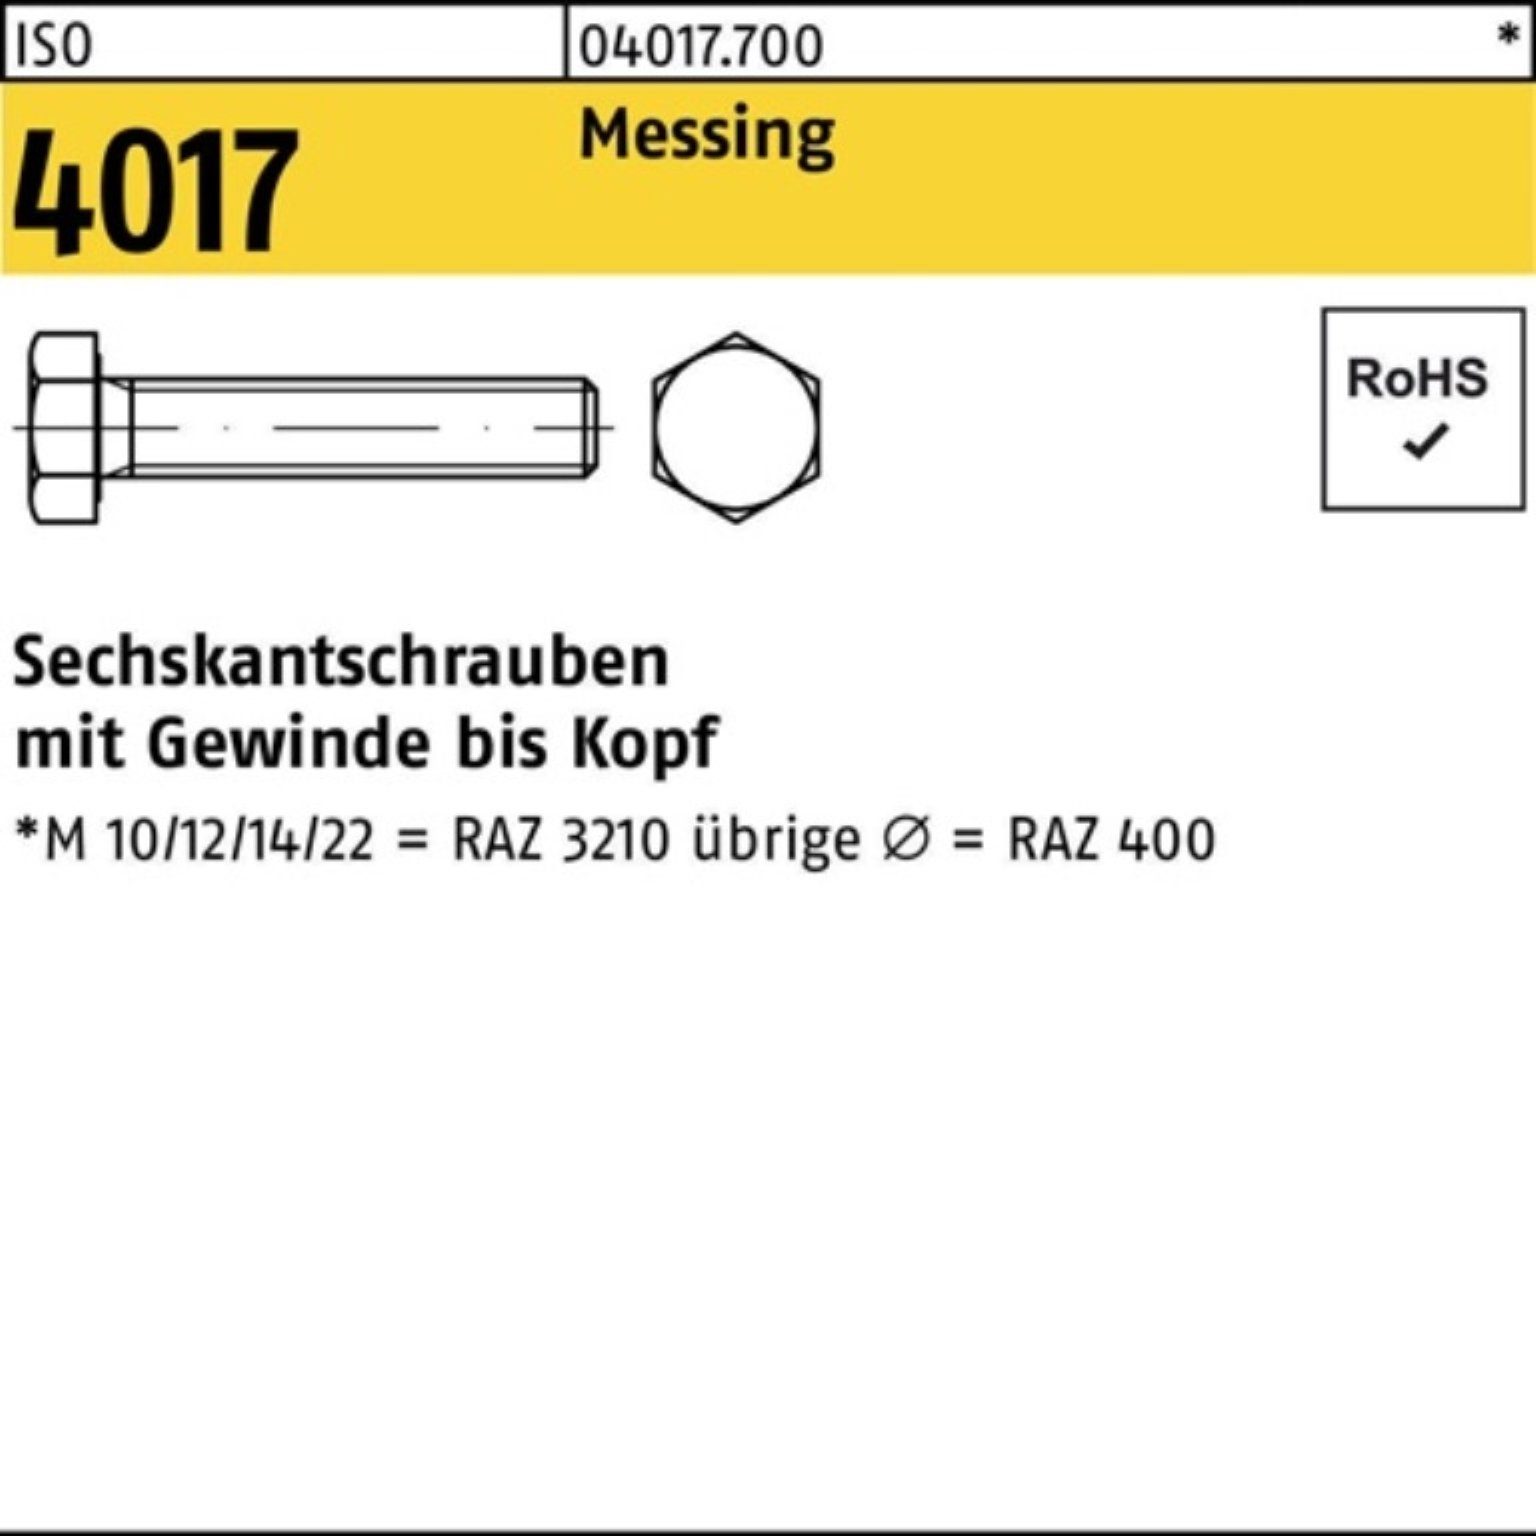 Bufab Sechskantschraube 100er ISO 100 IS Stück M10x 4017 Sechskantschraube Pack 12 VG Messing